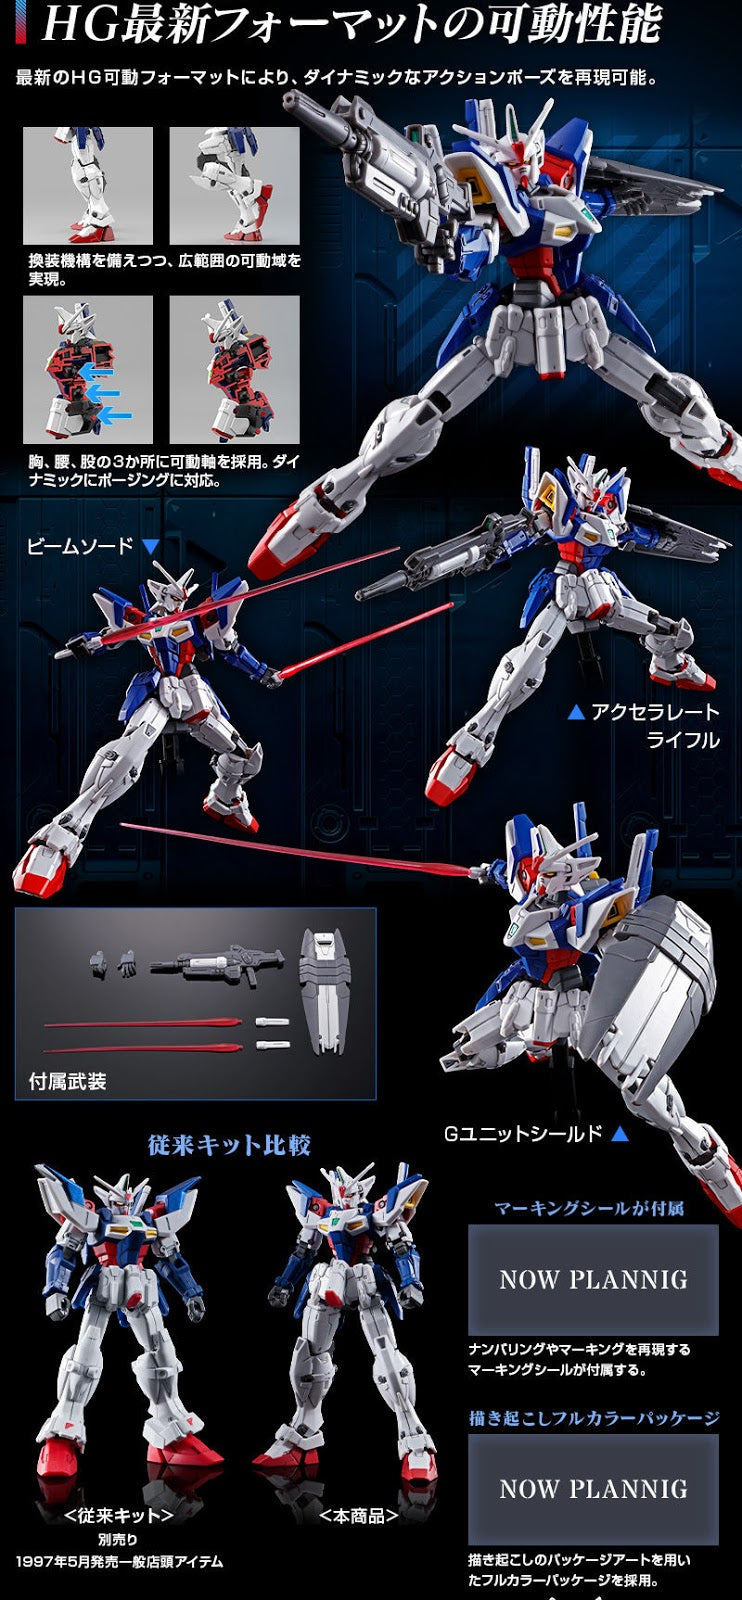 HG OZX-GU01A Gundam Geminass 01 - P-Bandai 1/144